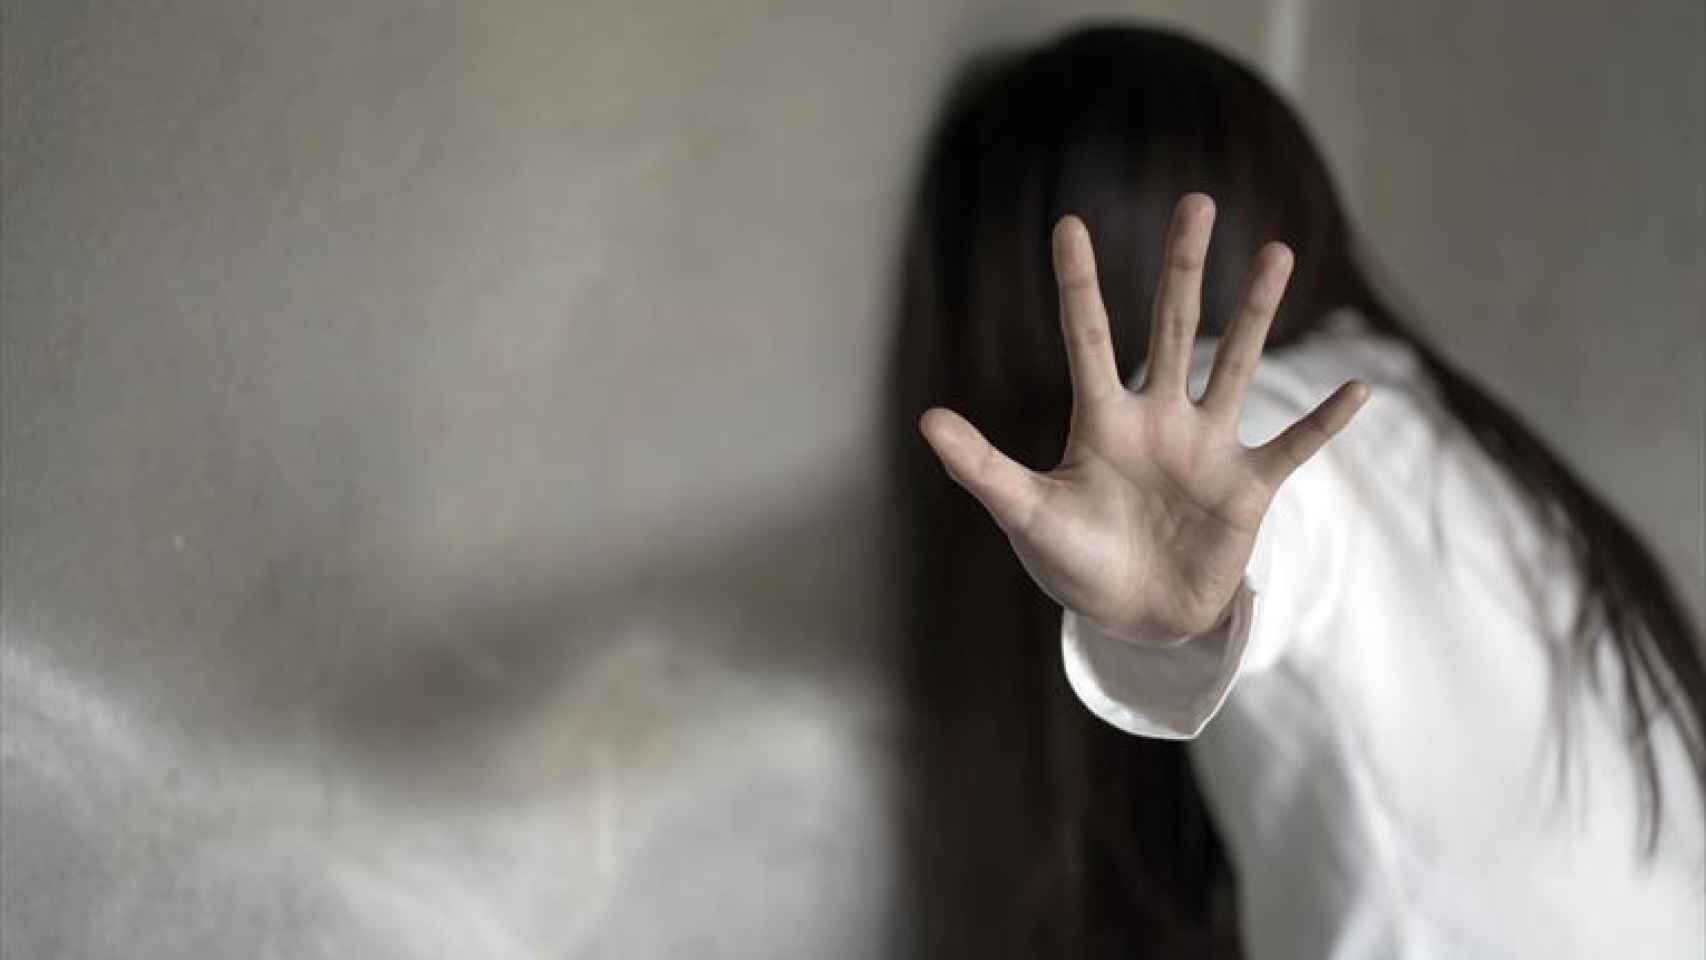 twelve Revocation Conceit Un padre viola a su hija de 15 años porque "quería ser el primero":  detenido en Calpe